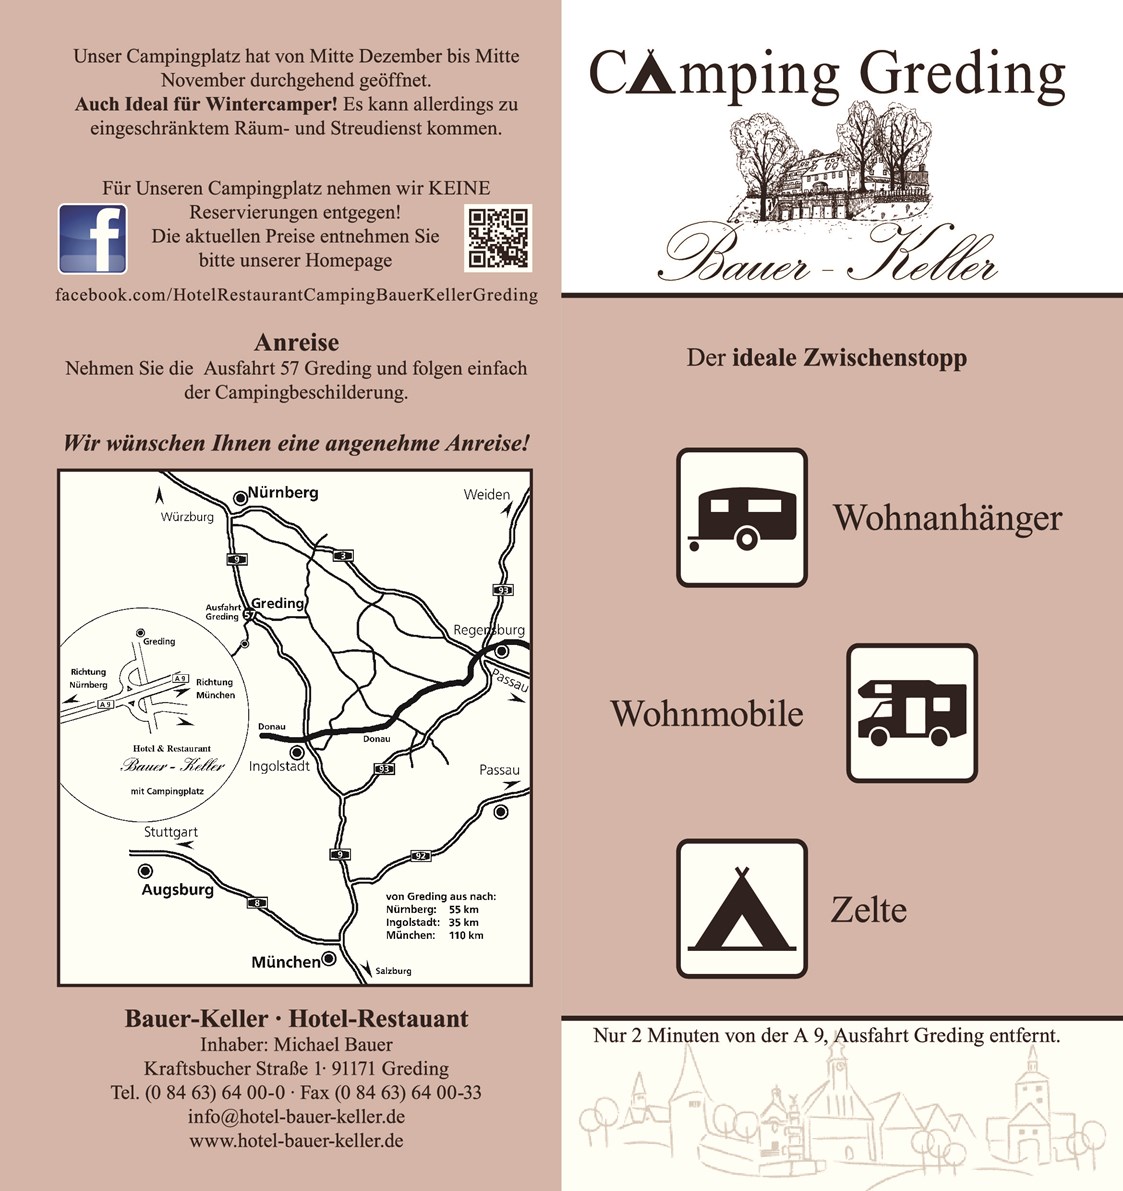 Campingplatz: Hotel, Restaurant & Camping Bauer-Keller